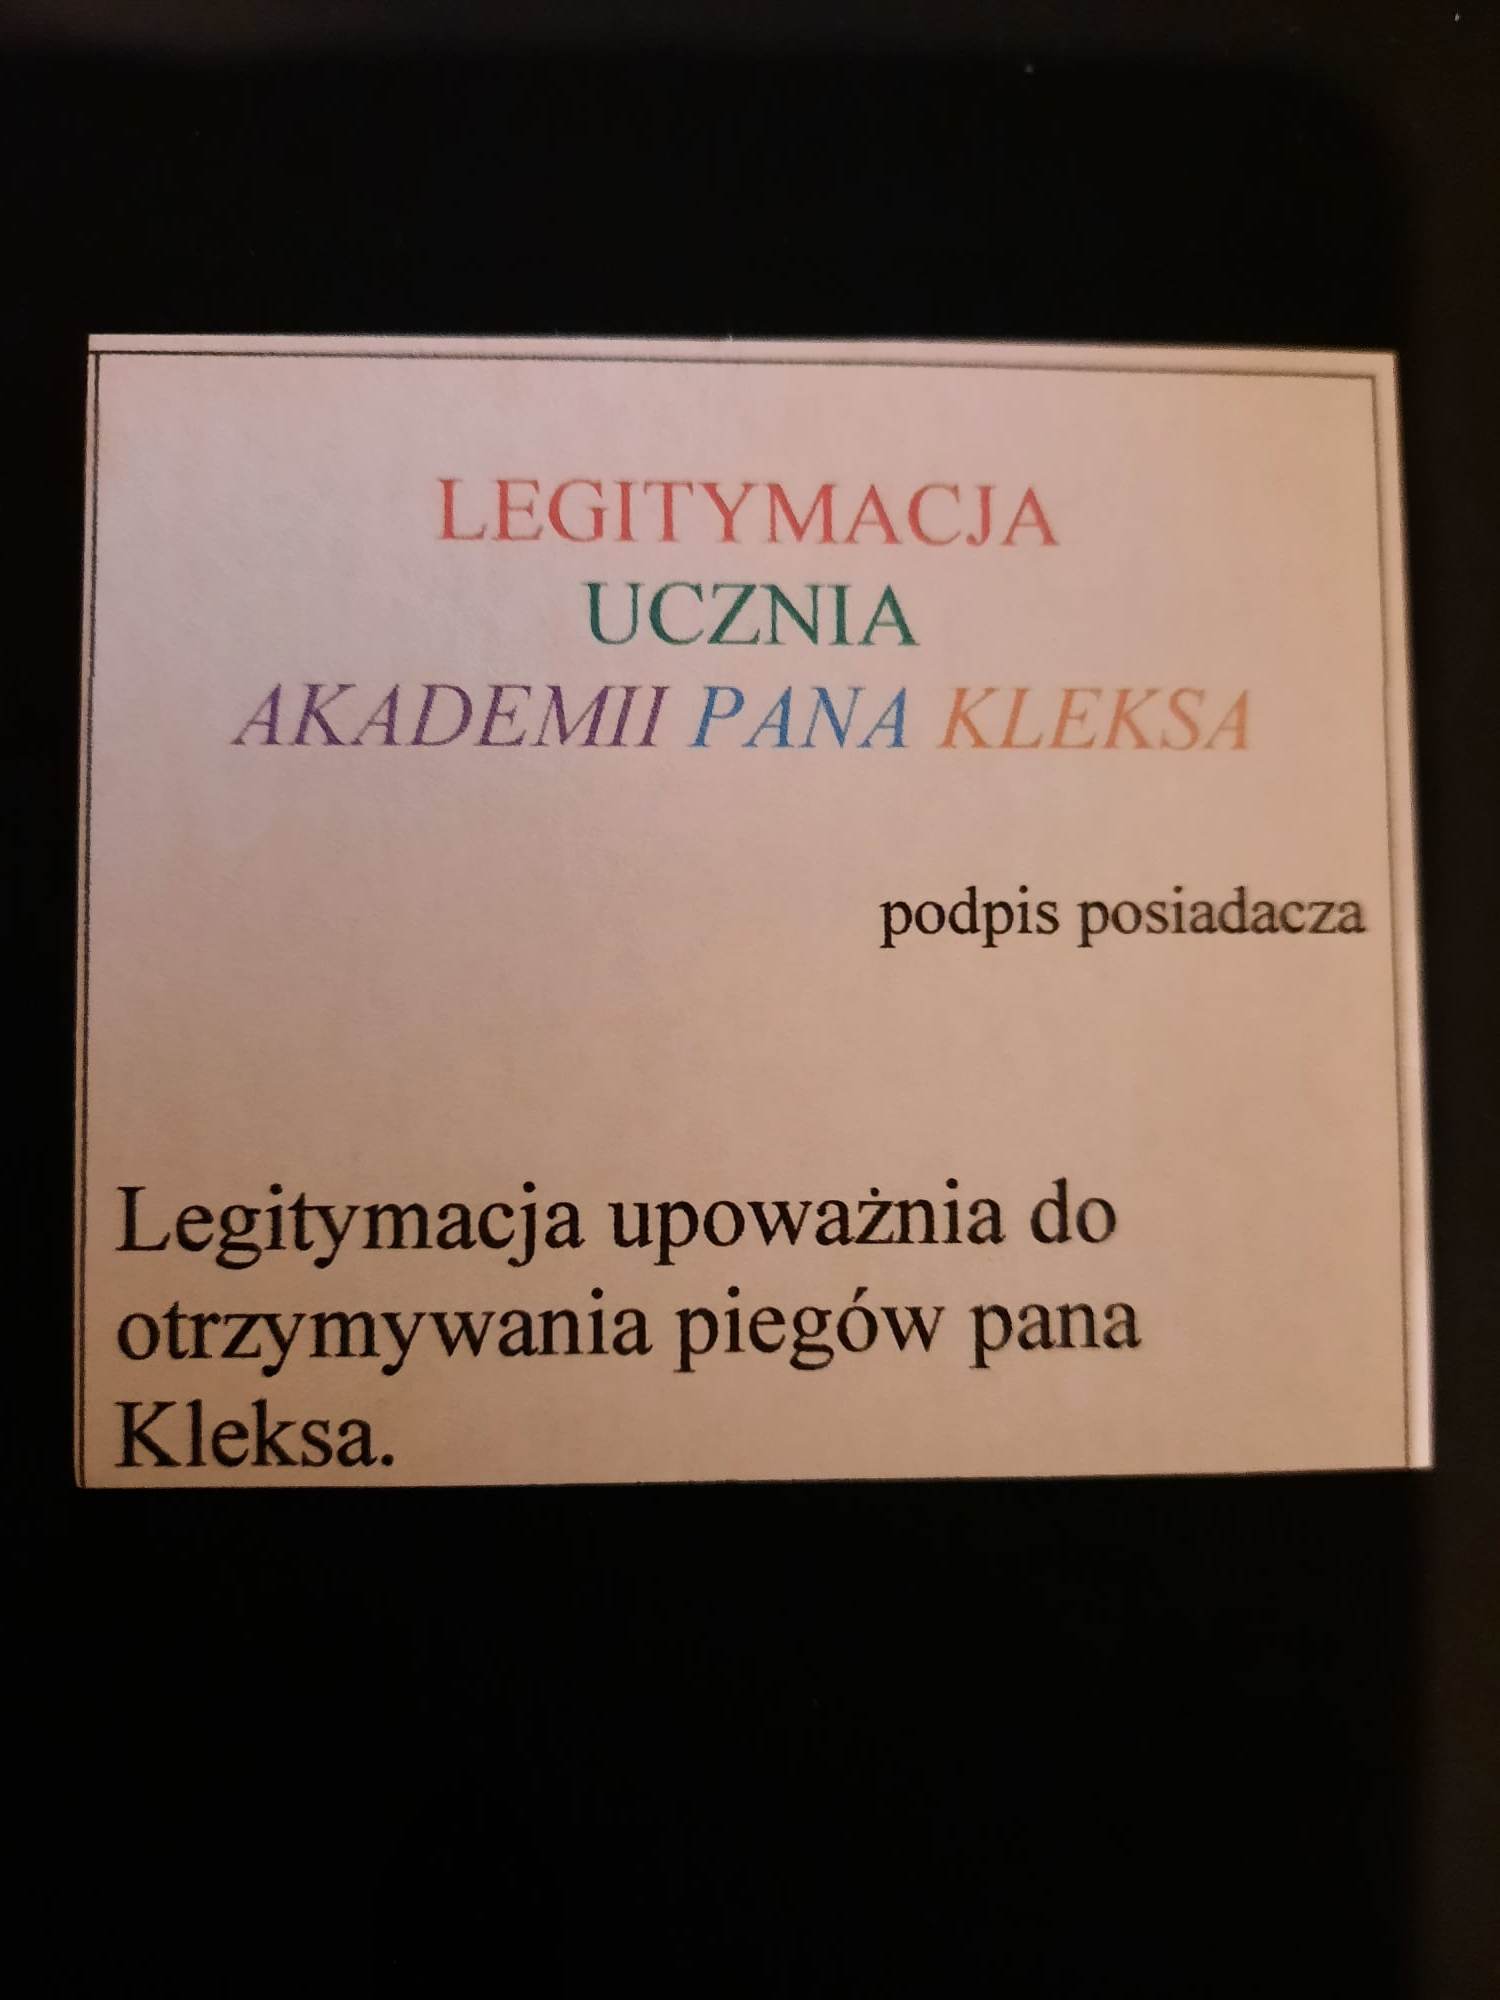 J. Polski - I ty moesz by uczniem Akademii pana Kleksa 4b